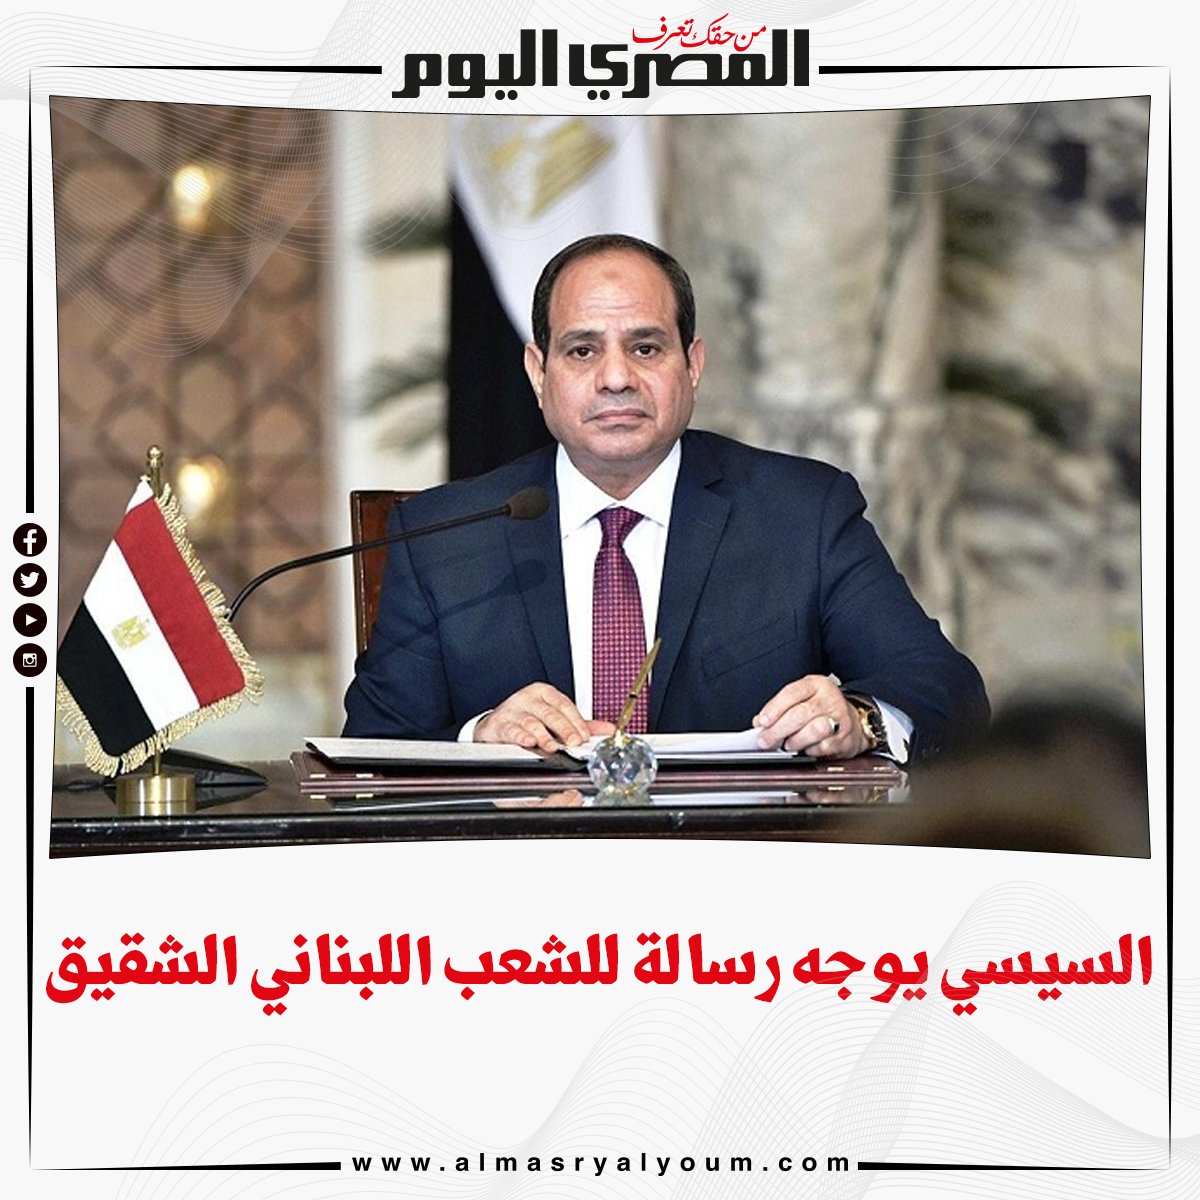 السيسي أيادي مصر ممدودة للمجتمع الدولي للتكاتف وتسخير إمكاناتنا لدعم لبنان